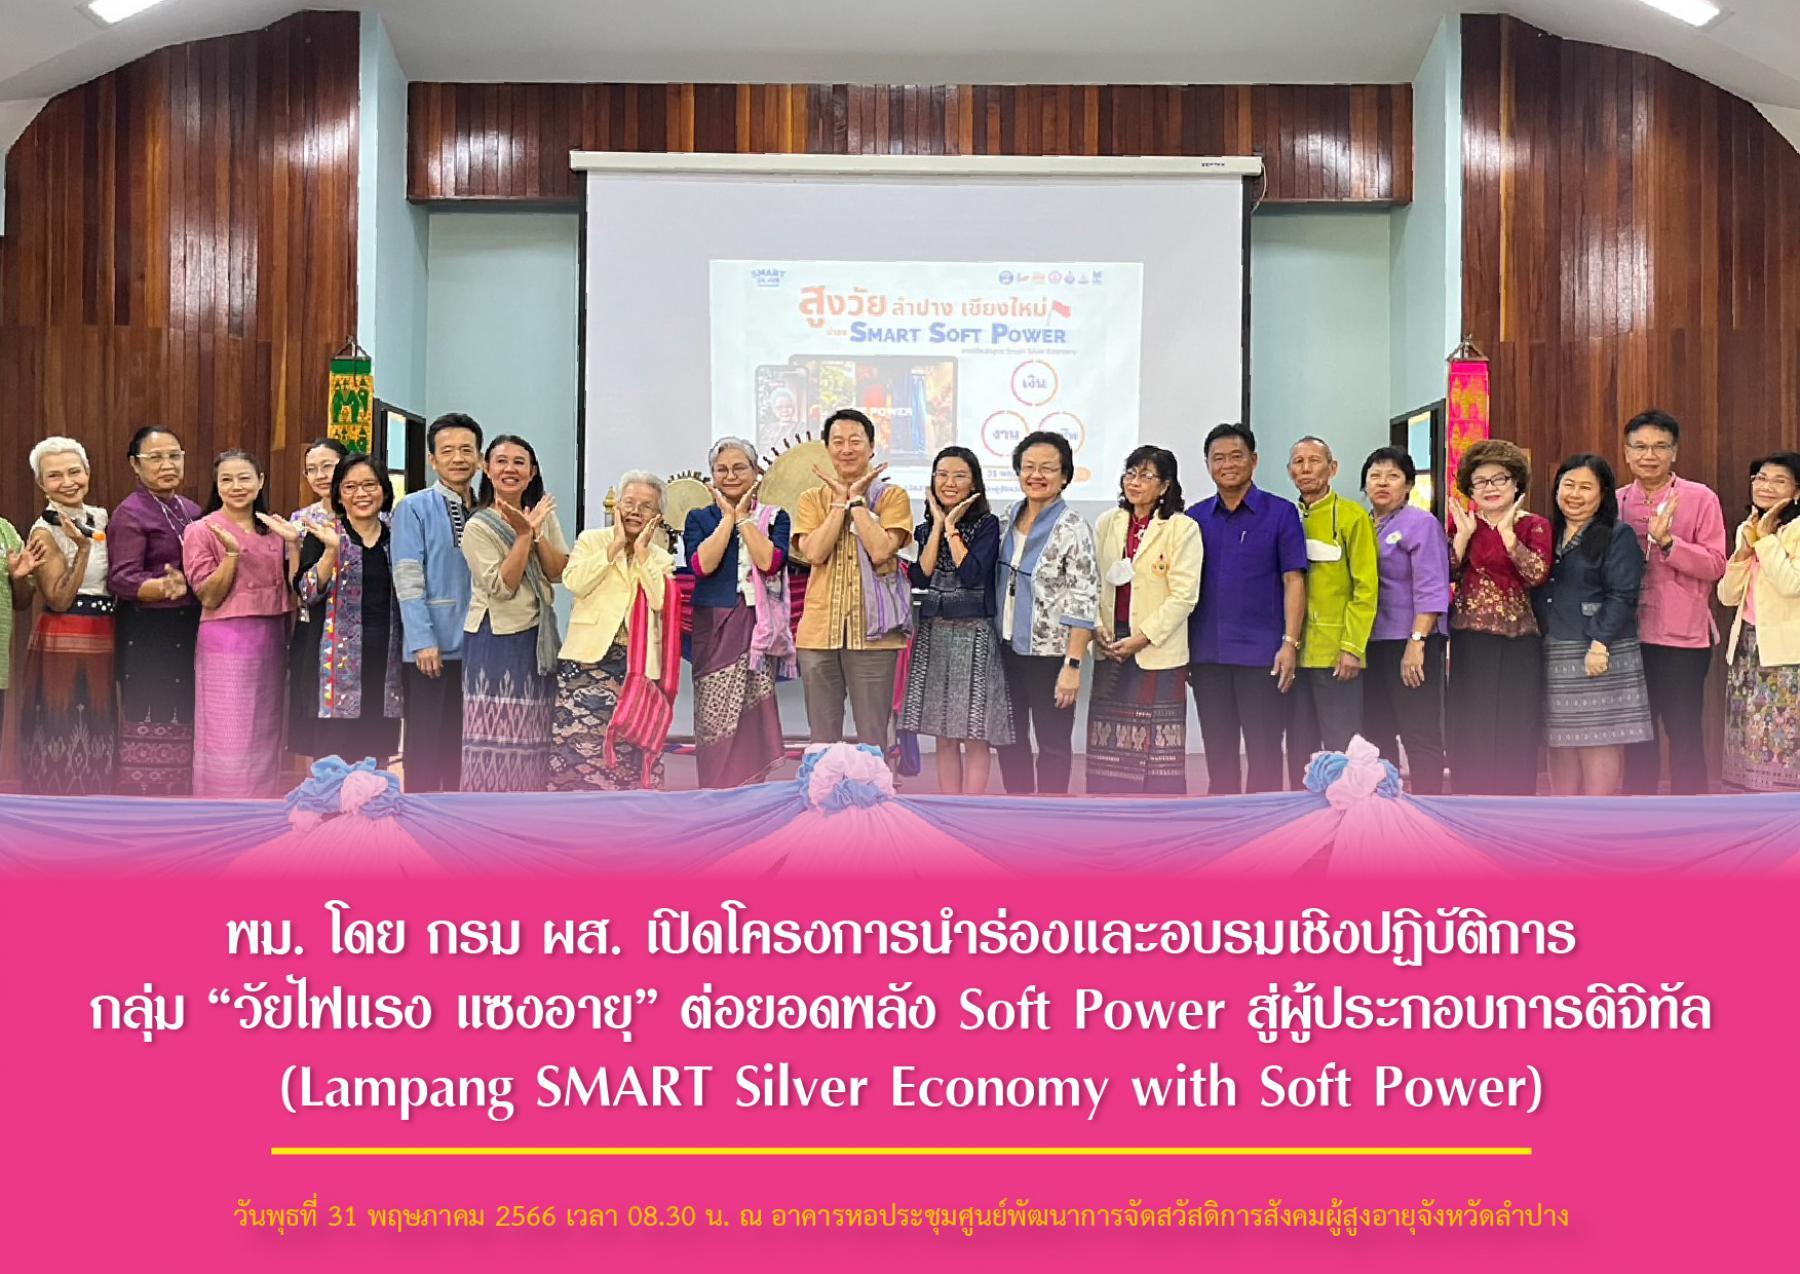 พม. โดย กรม ผส. เปิดโครงการนำร่องและอบรมเชิงปฏิบัติการ กลุ่ม “วัยไฟแรง แซงอายุ” ต่อยอดพลัง Soft Power สู่ผู้ประกอบการดิจิทัล (Lampang SMART Silver Economy with Soft Power)